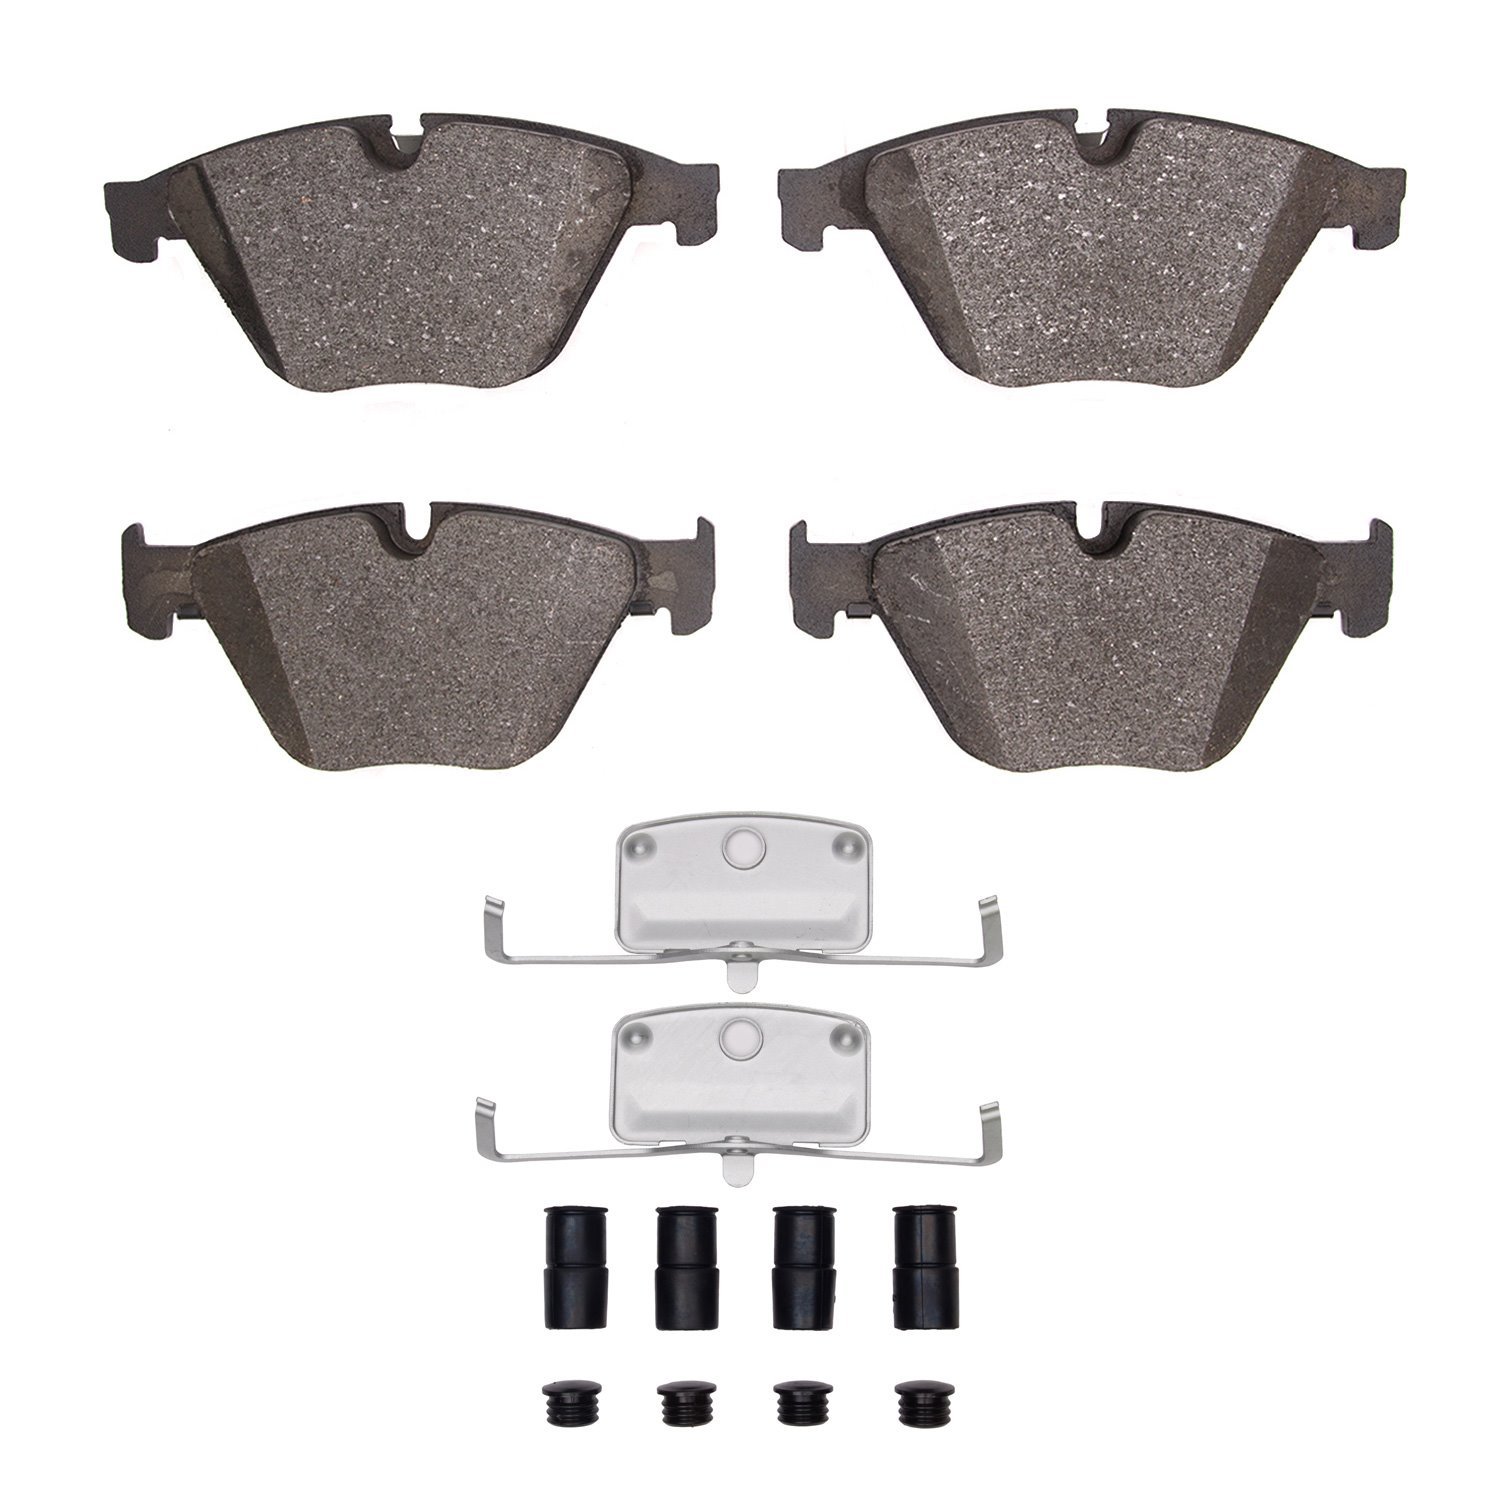 1600-1505-01 5000 Euro Ceramic Brake Pads & Hardware Kit, 2011-2019 BMW, Position: Front